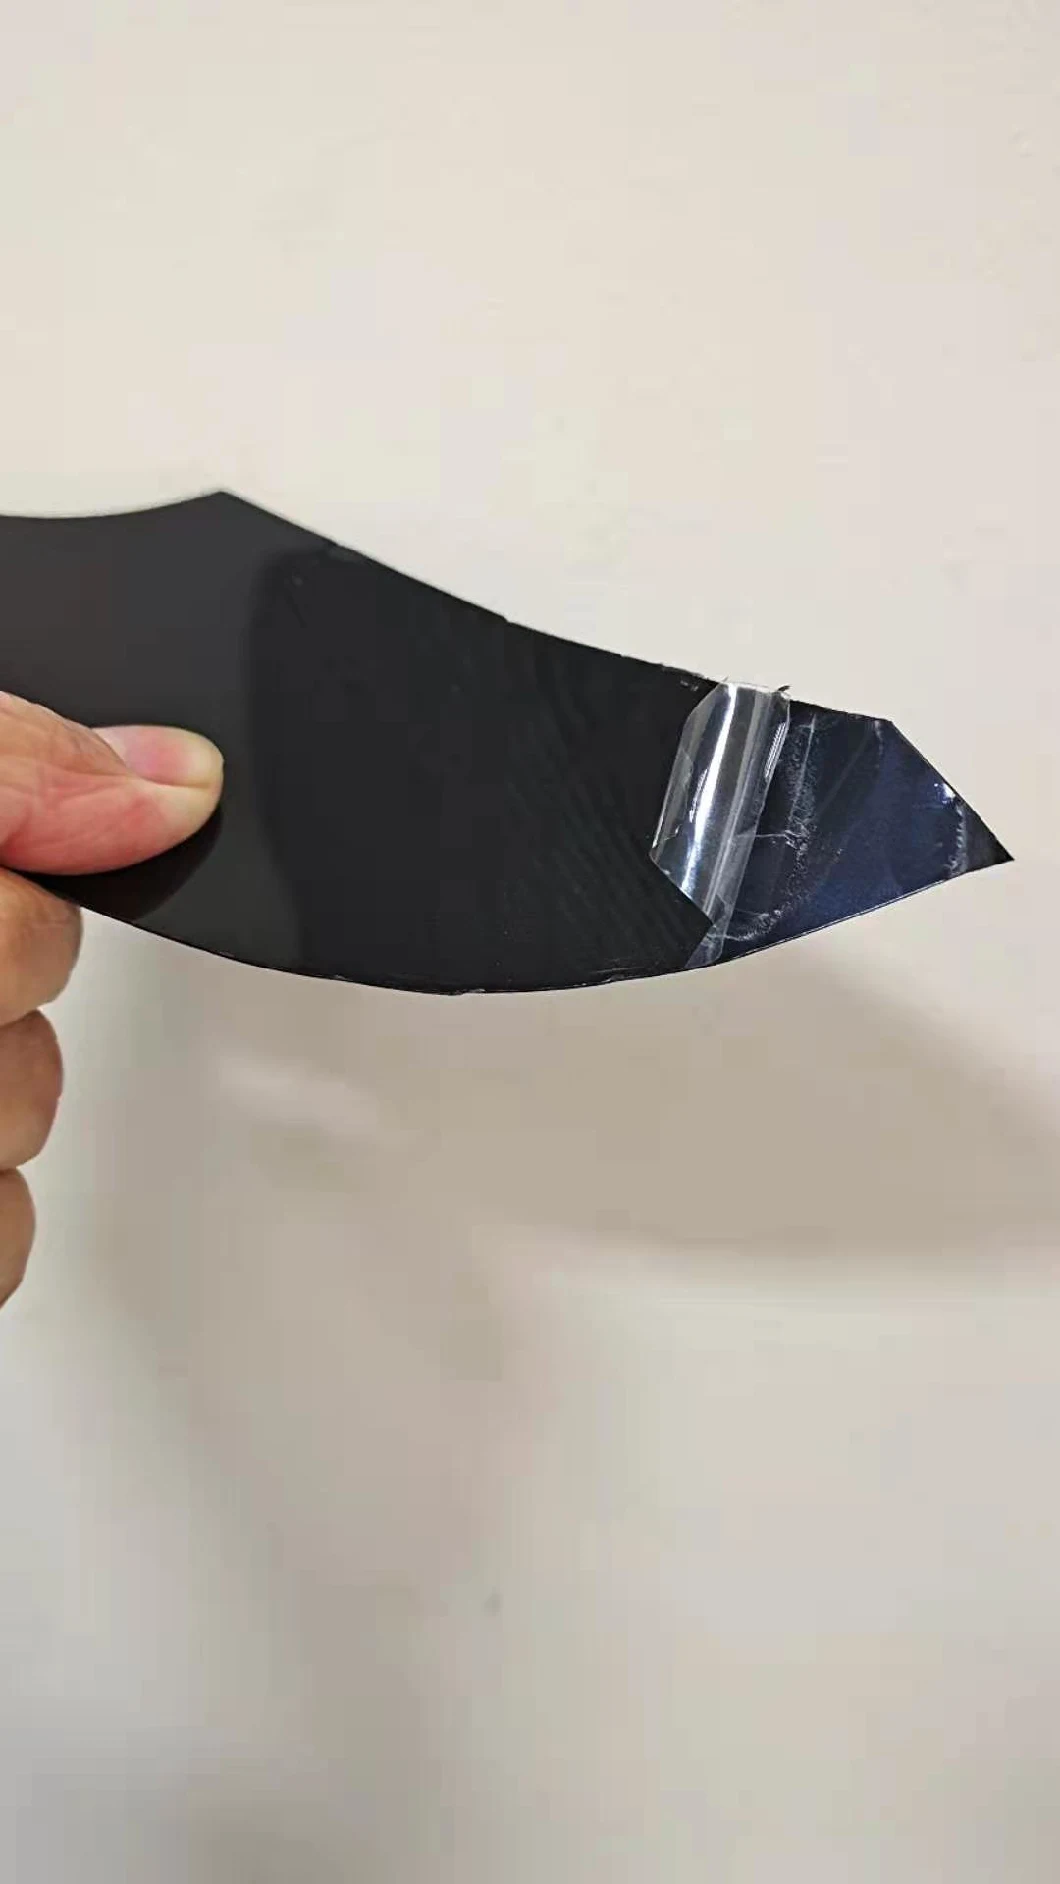 Capa de filme plástico transparente para bandeja de PP com alimentos crus ou carne ou uso de peixes para a máquina